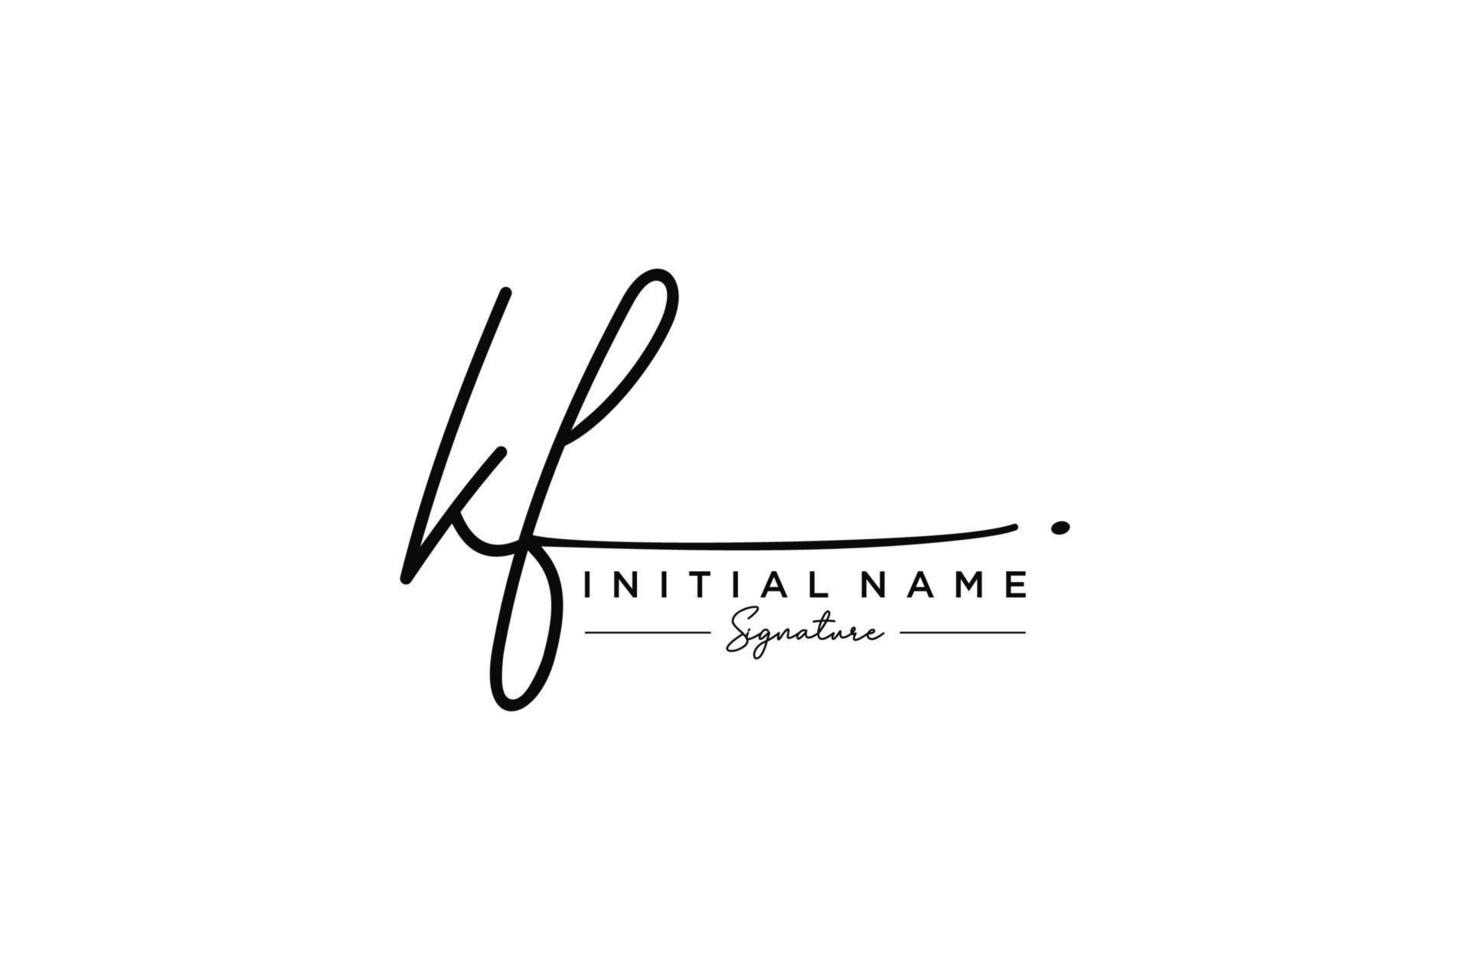 vector de plantilla de logotipo de firma kf inicial. ilustración de vector de letras de caligrafía dibujada a mano.